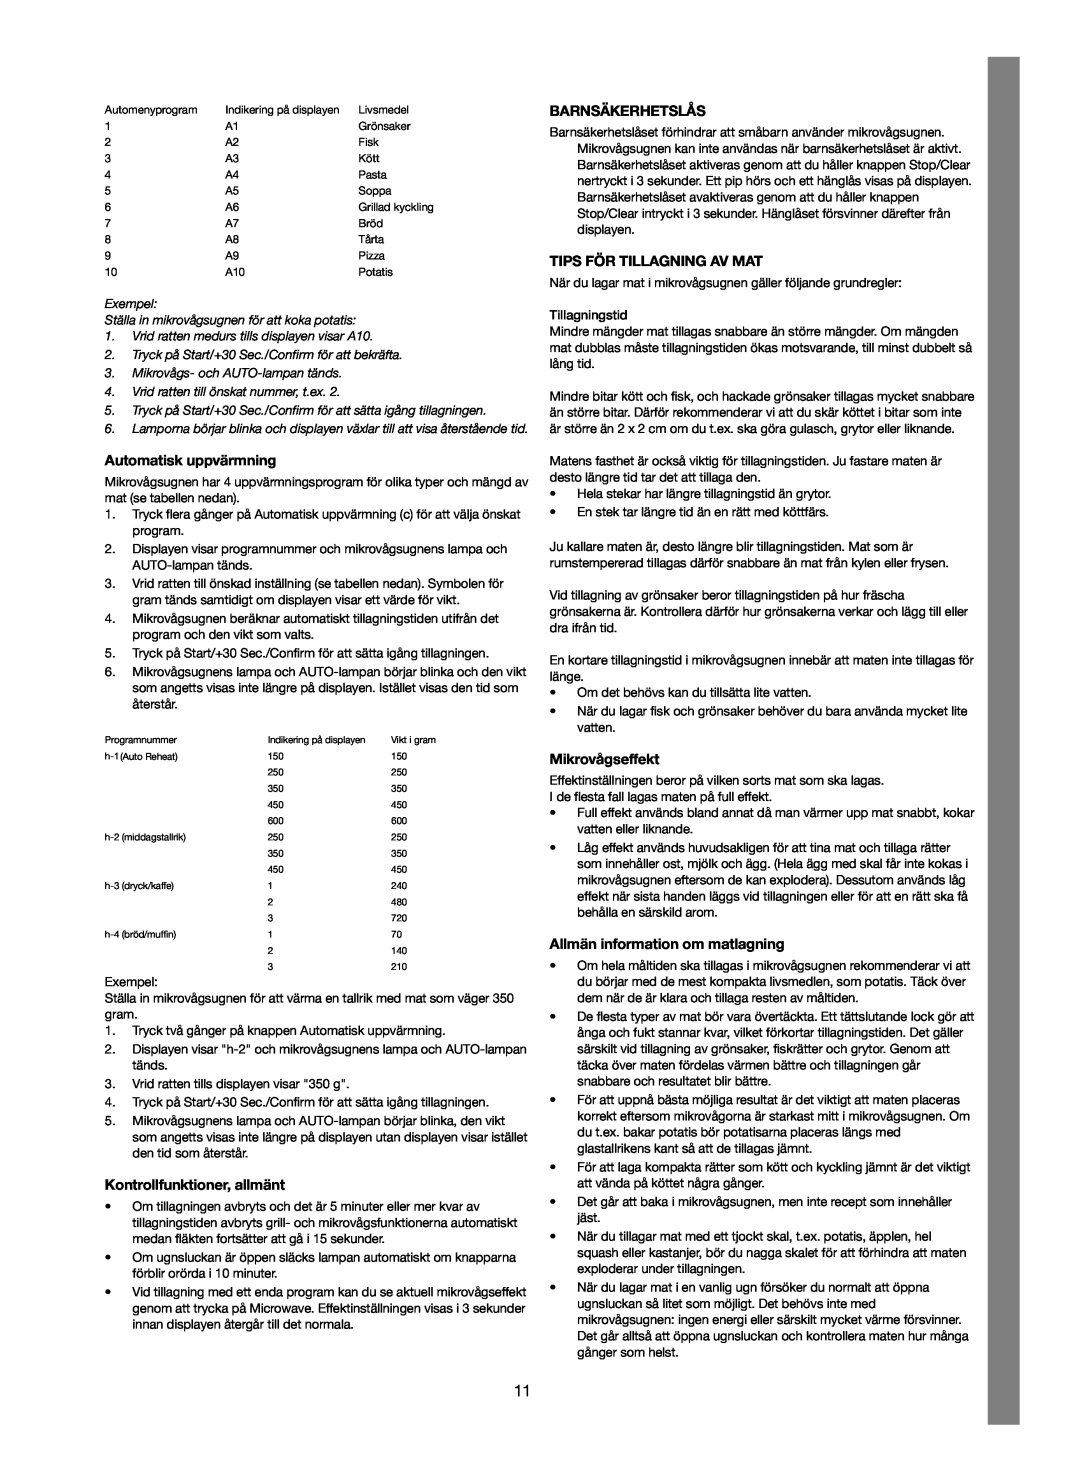 Melissa 753-123 manual Automatisk uppvärmning, Kontrollfunktioner, allmänt, Barnsäkerhetslås, Tips För Tillagning Av Mat 